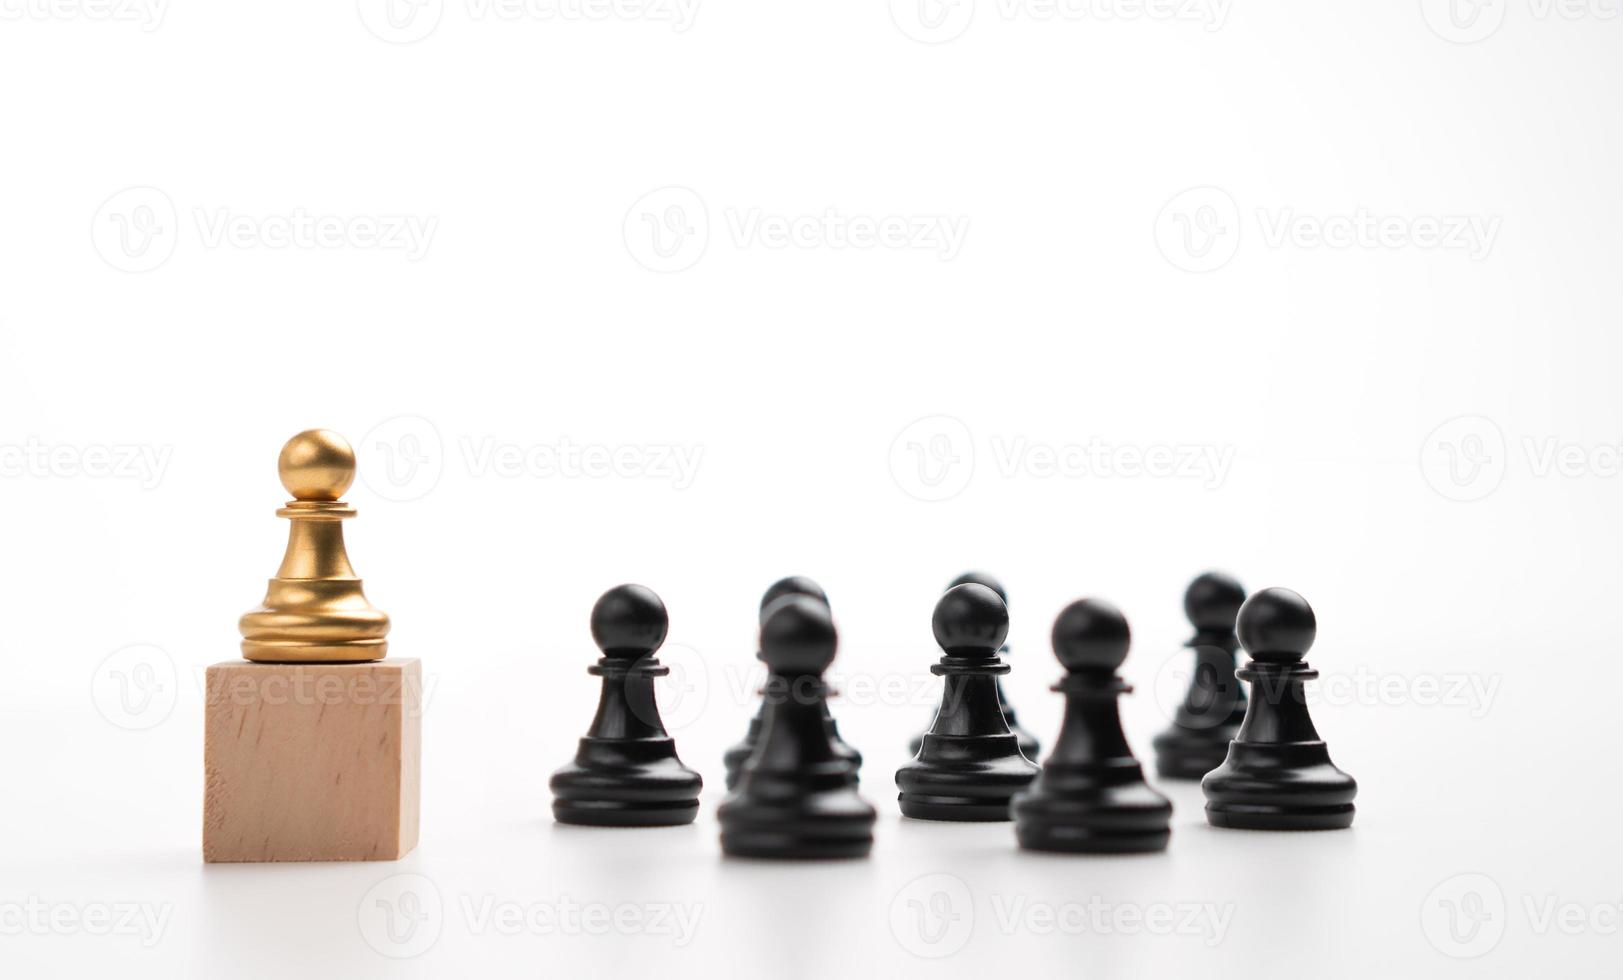 die führung des goldenen schachbauern, der auf der box steht, zeigt einfluss und ermächtigung. konzept der unternehmensführung für führungsteam, erfolgreicher wettbewerbssieger und führer mit strategie foto